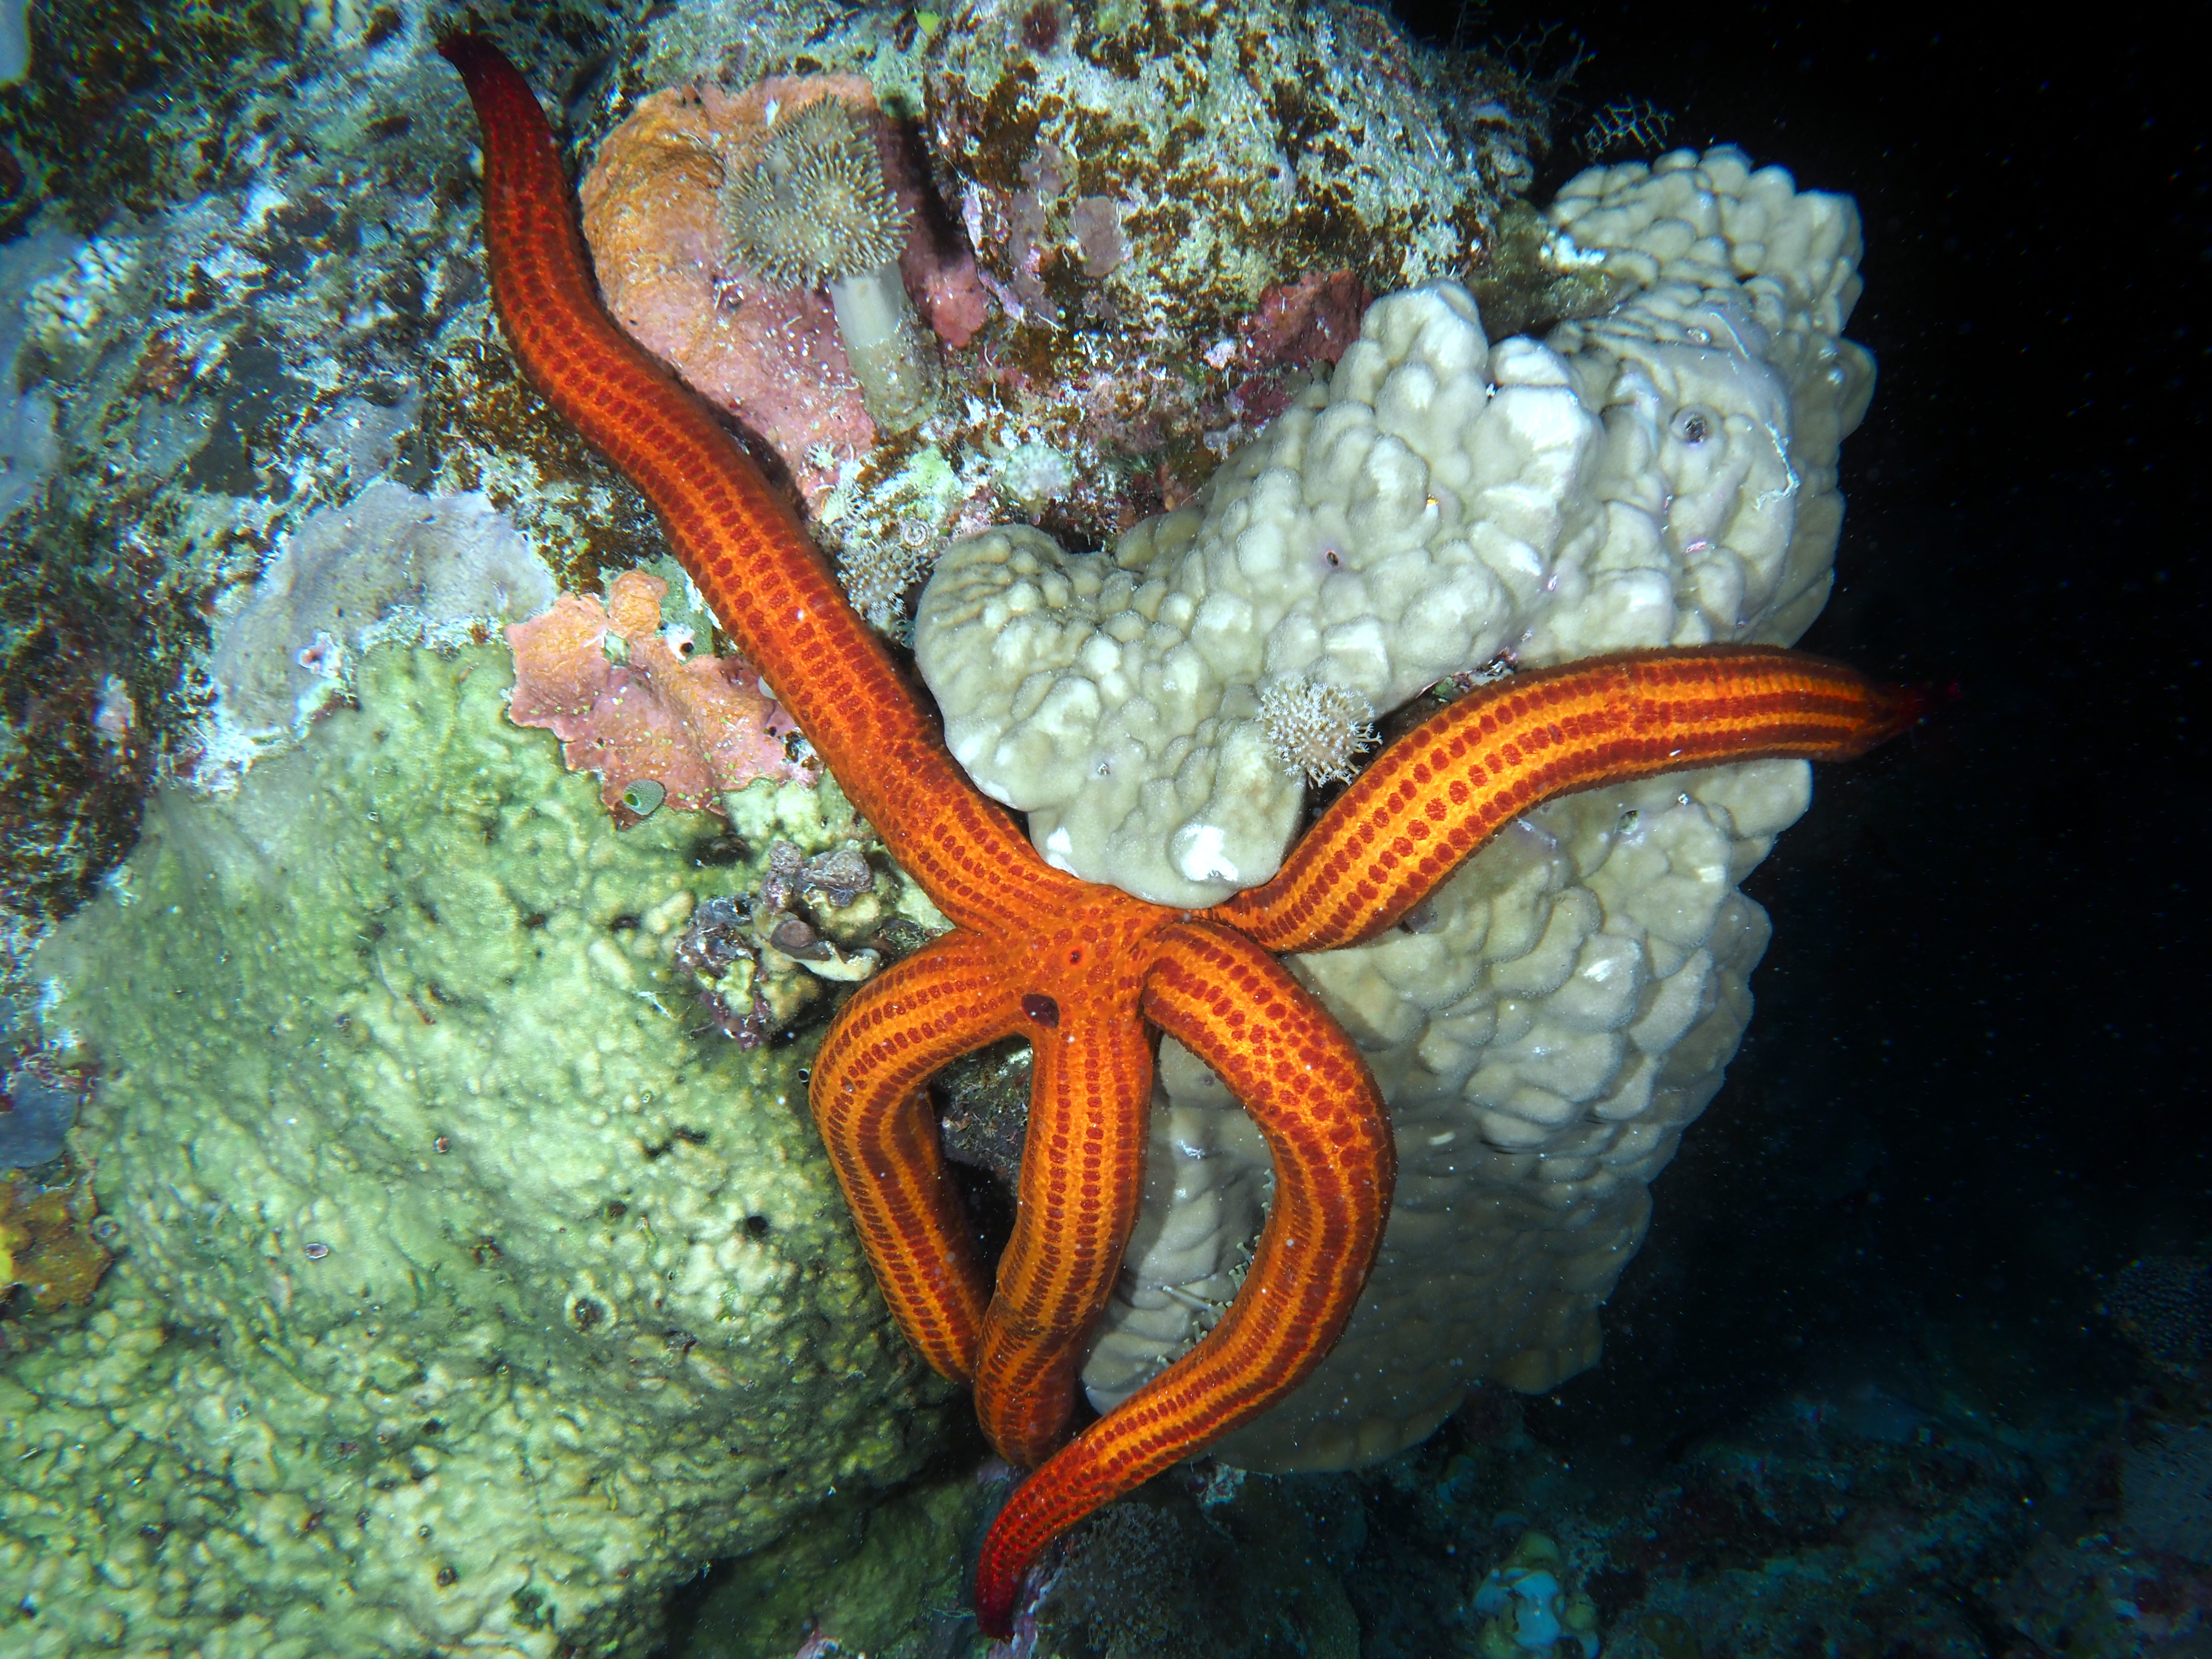 Velvety Sea Star - Leiaster speciosus - Coral Sea, Australia